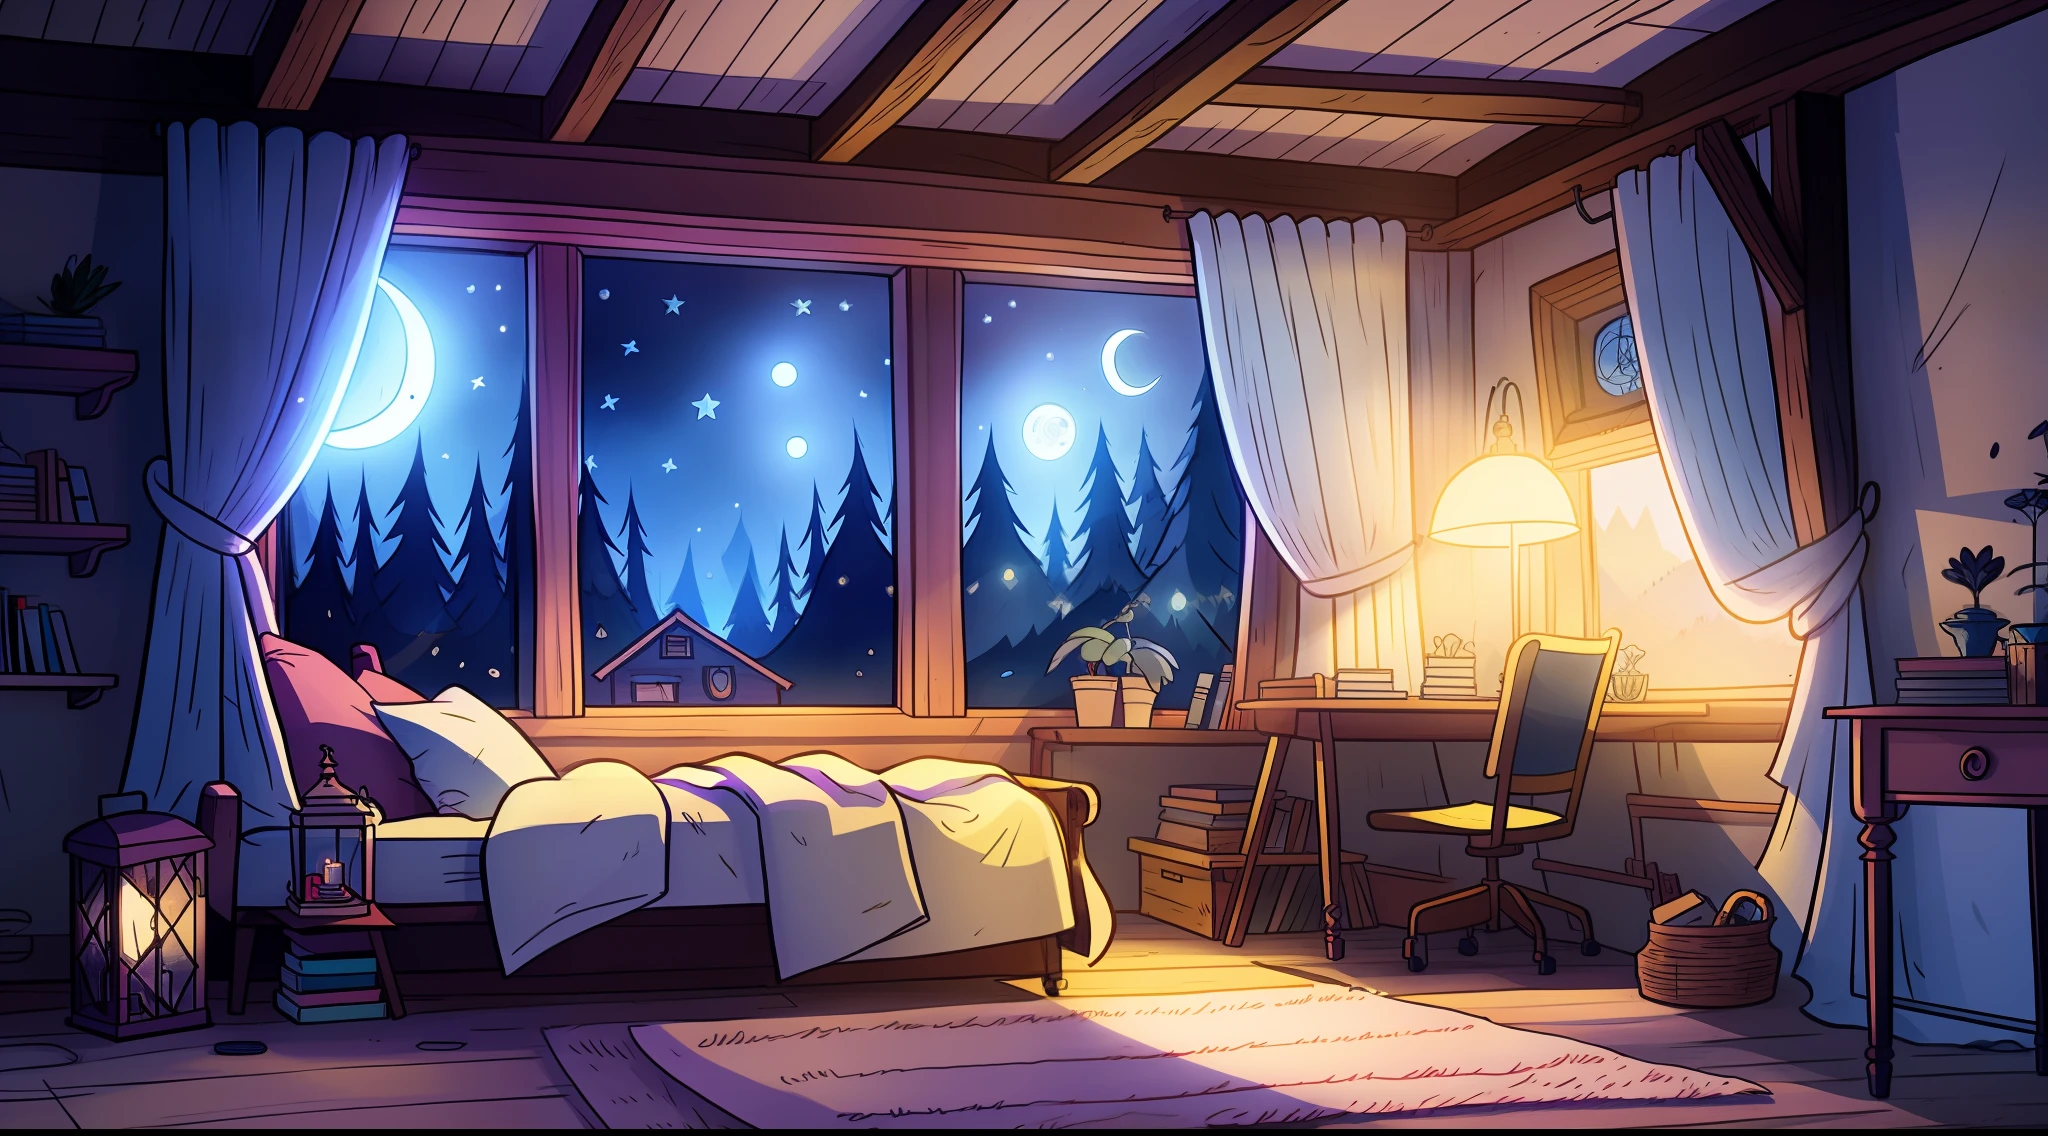 a cozy room at night, Moonlight shining through the window, Detailed illustration, desenhos animados, no estilo de gravityfalls,curto de adulto